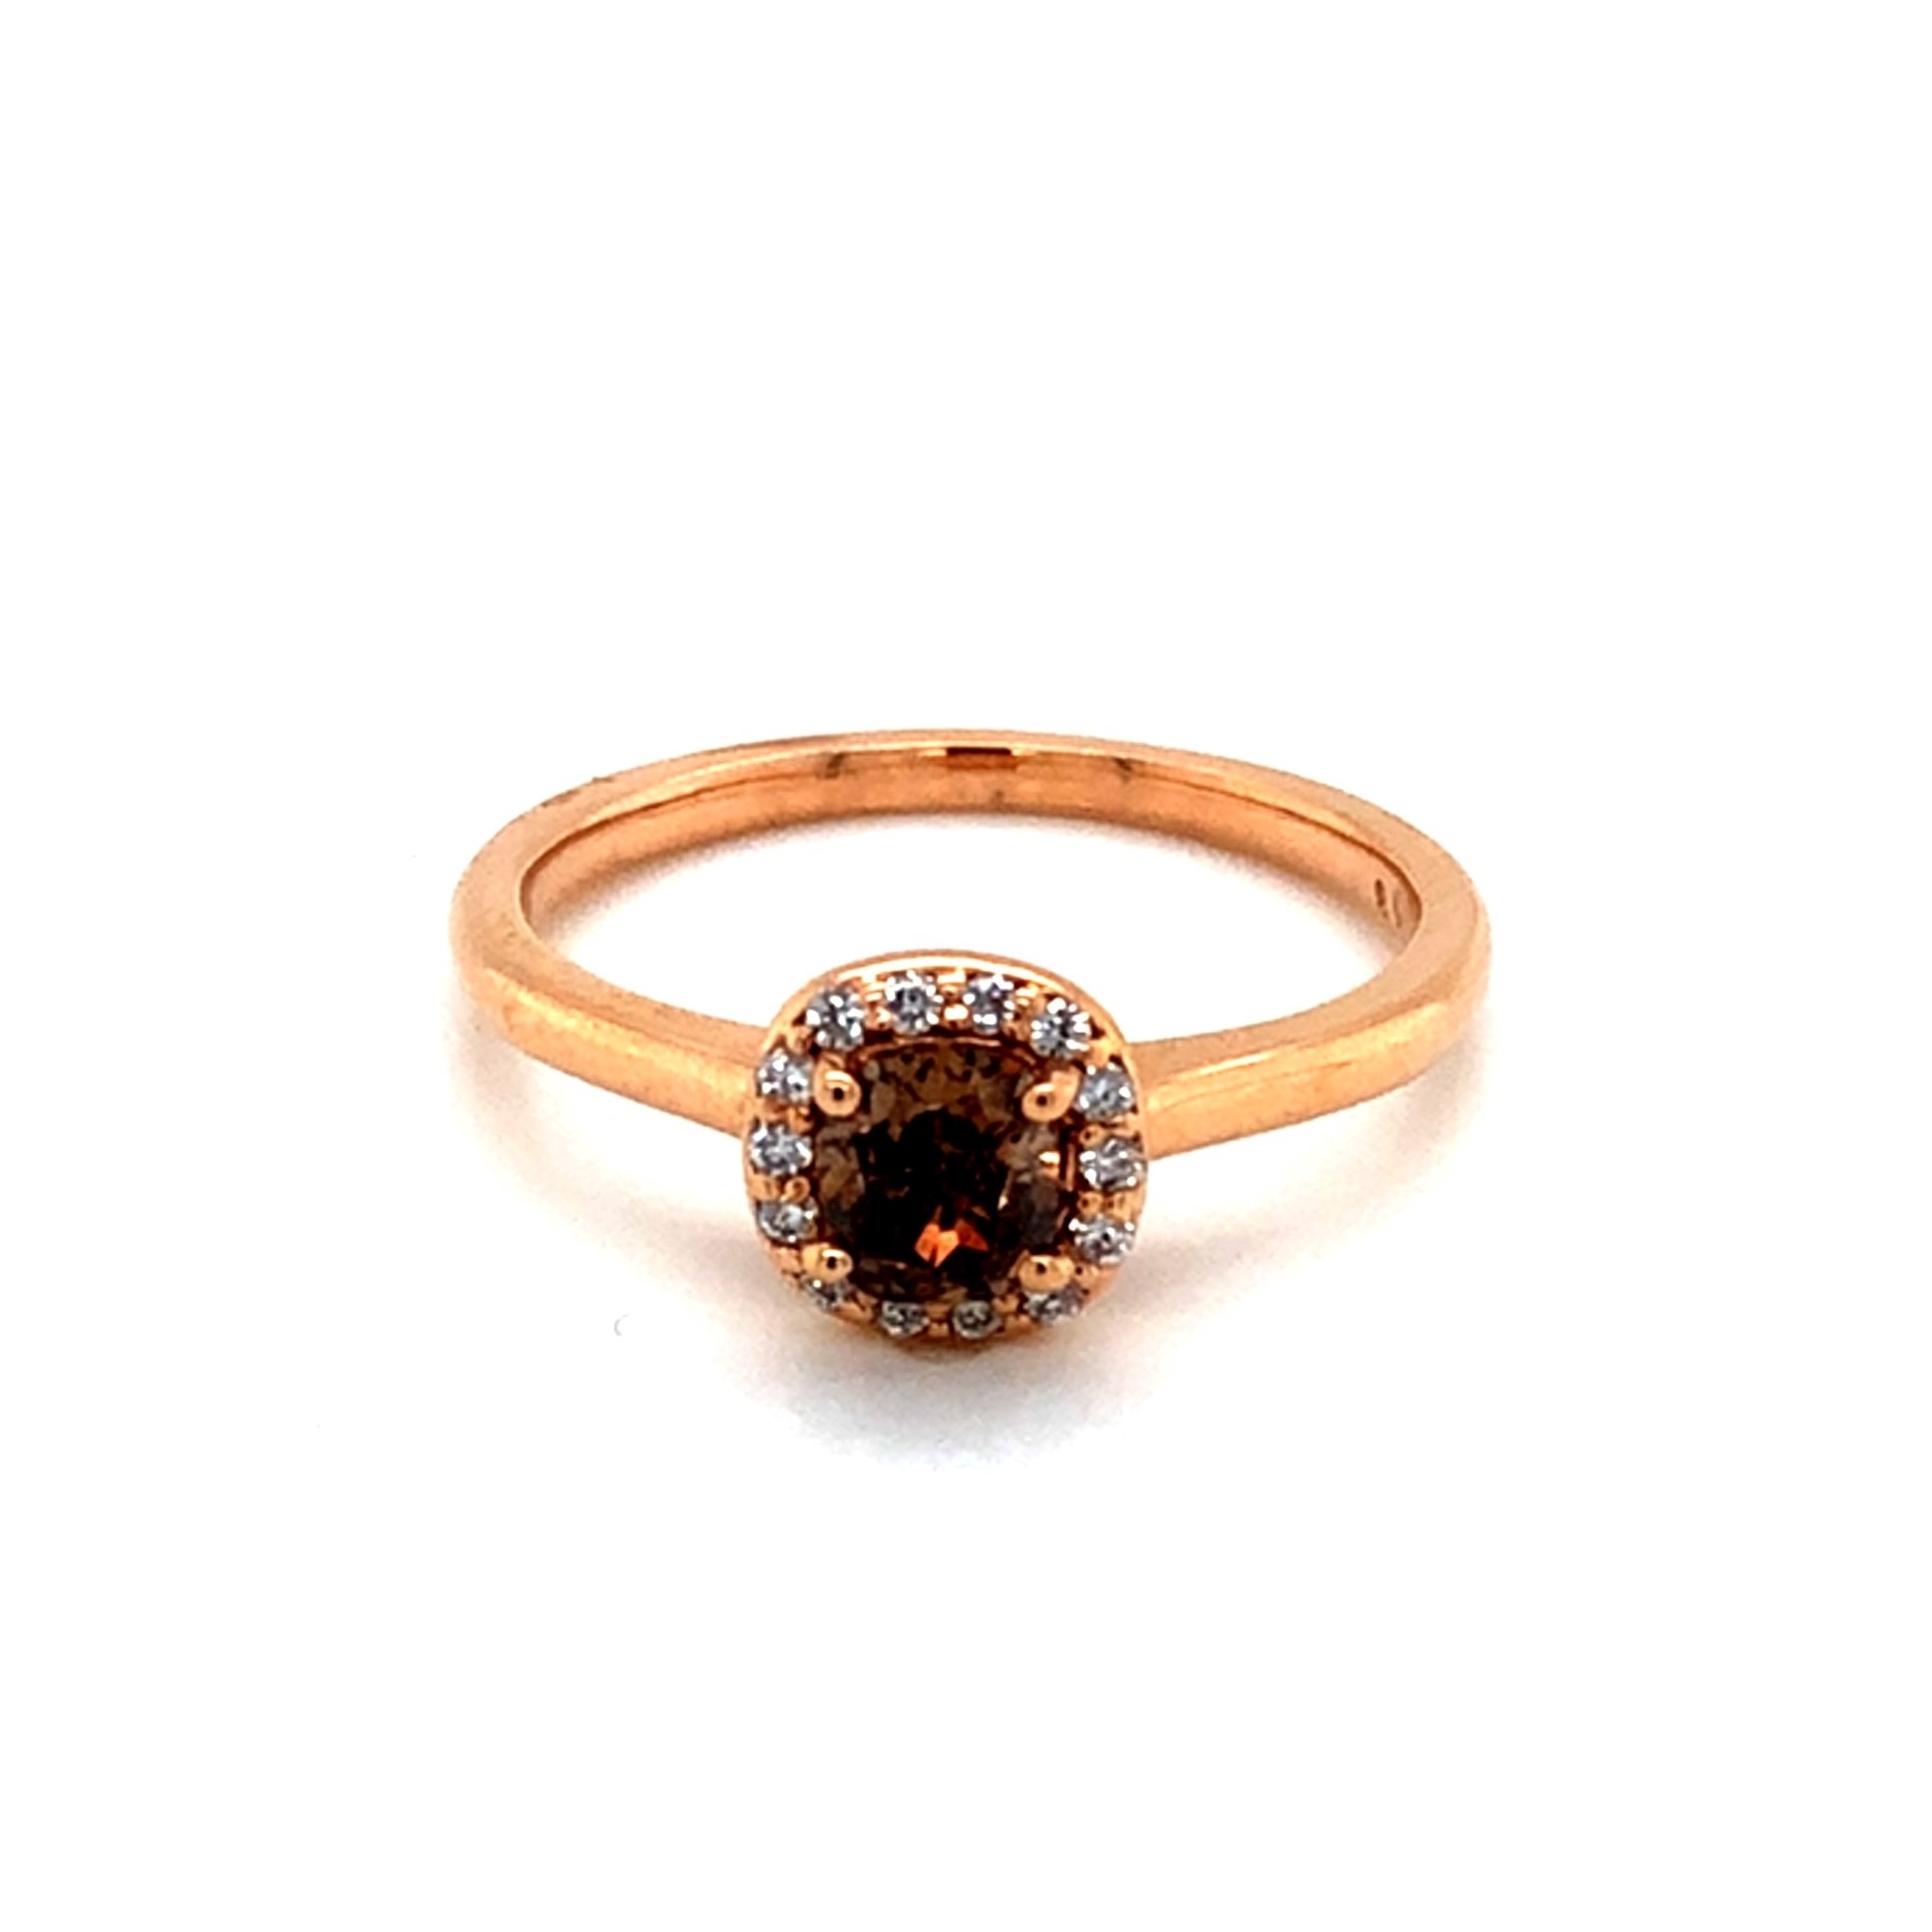 Diamond Engagement Rings   Metal=14 Karat   Color=Rose Ring   Size=7  round brown diamond center   dwt=1.94  Retail  $2395